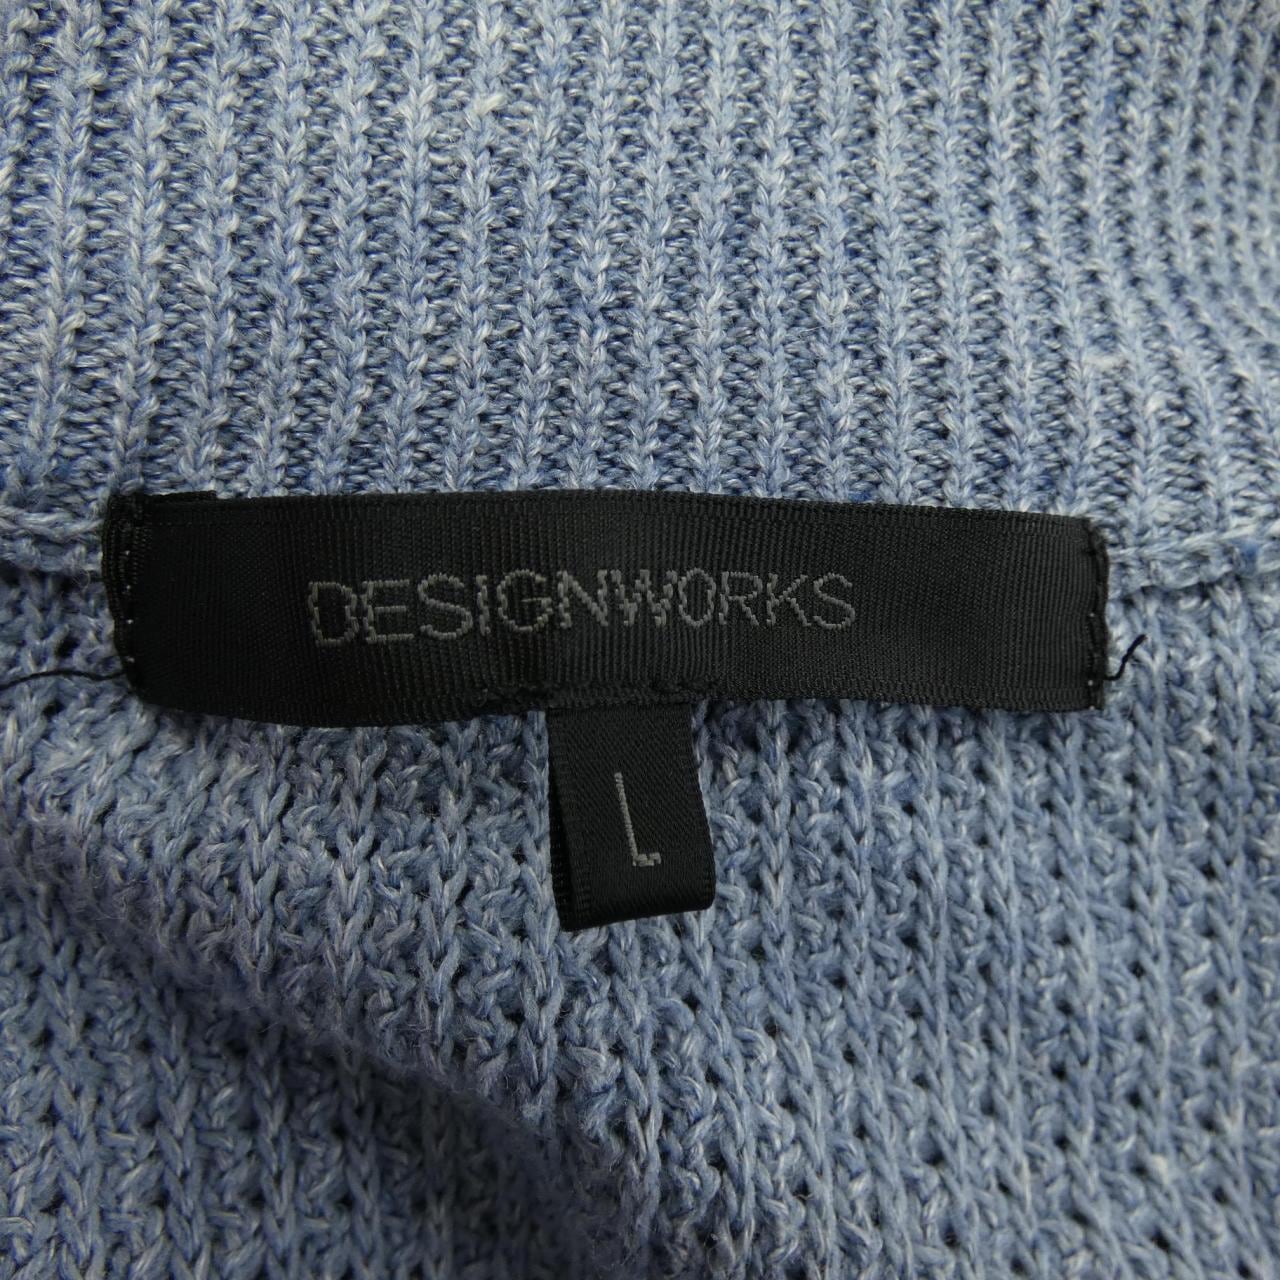 DESIGN WORKS DESIGN WORKS jacket